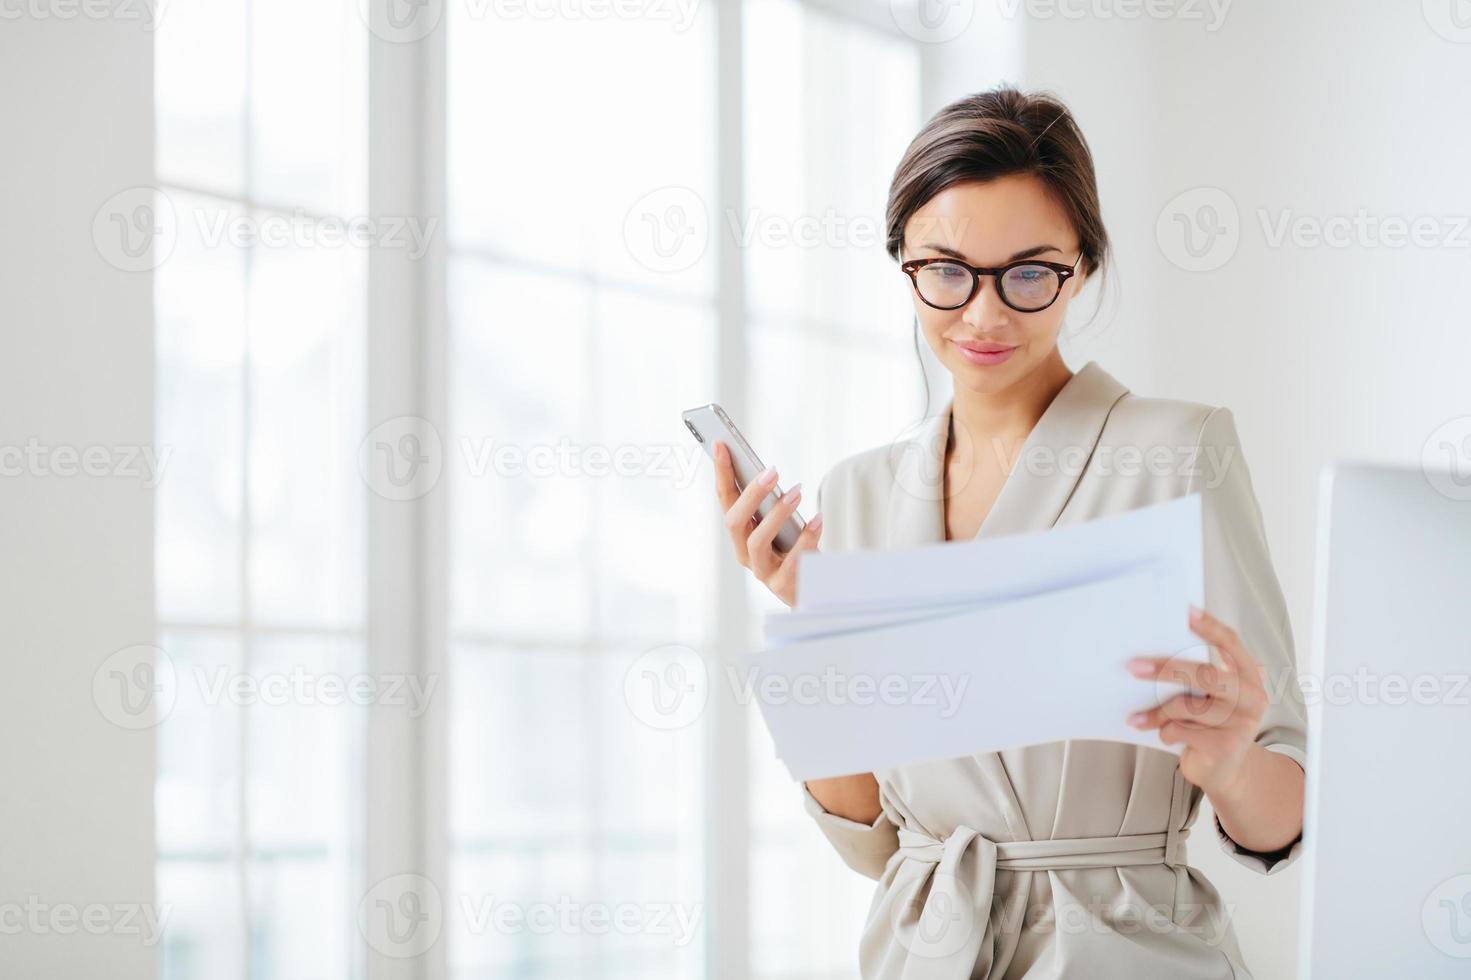 une employée satisfaite concentrée sur les documents, lit attentivement le rapport préparé, tient un smartphone moderne, porte des lunettes transparentes et des poses de costume d'affaires sur l'intérieur du bureau vérifie le revenu mensuel photo